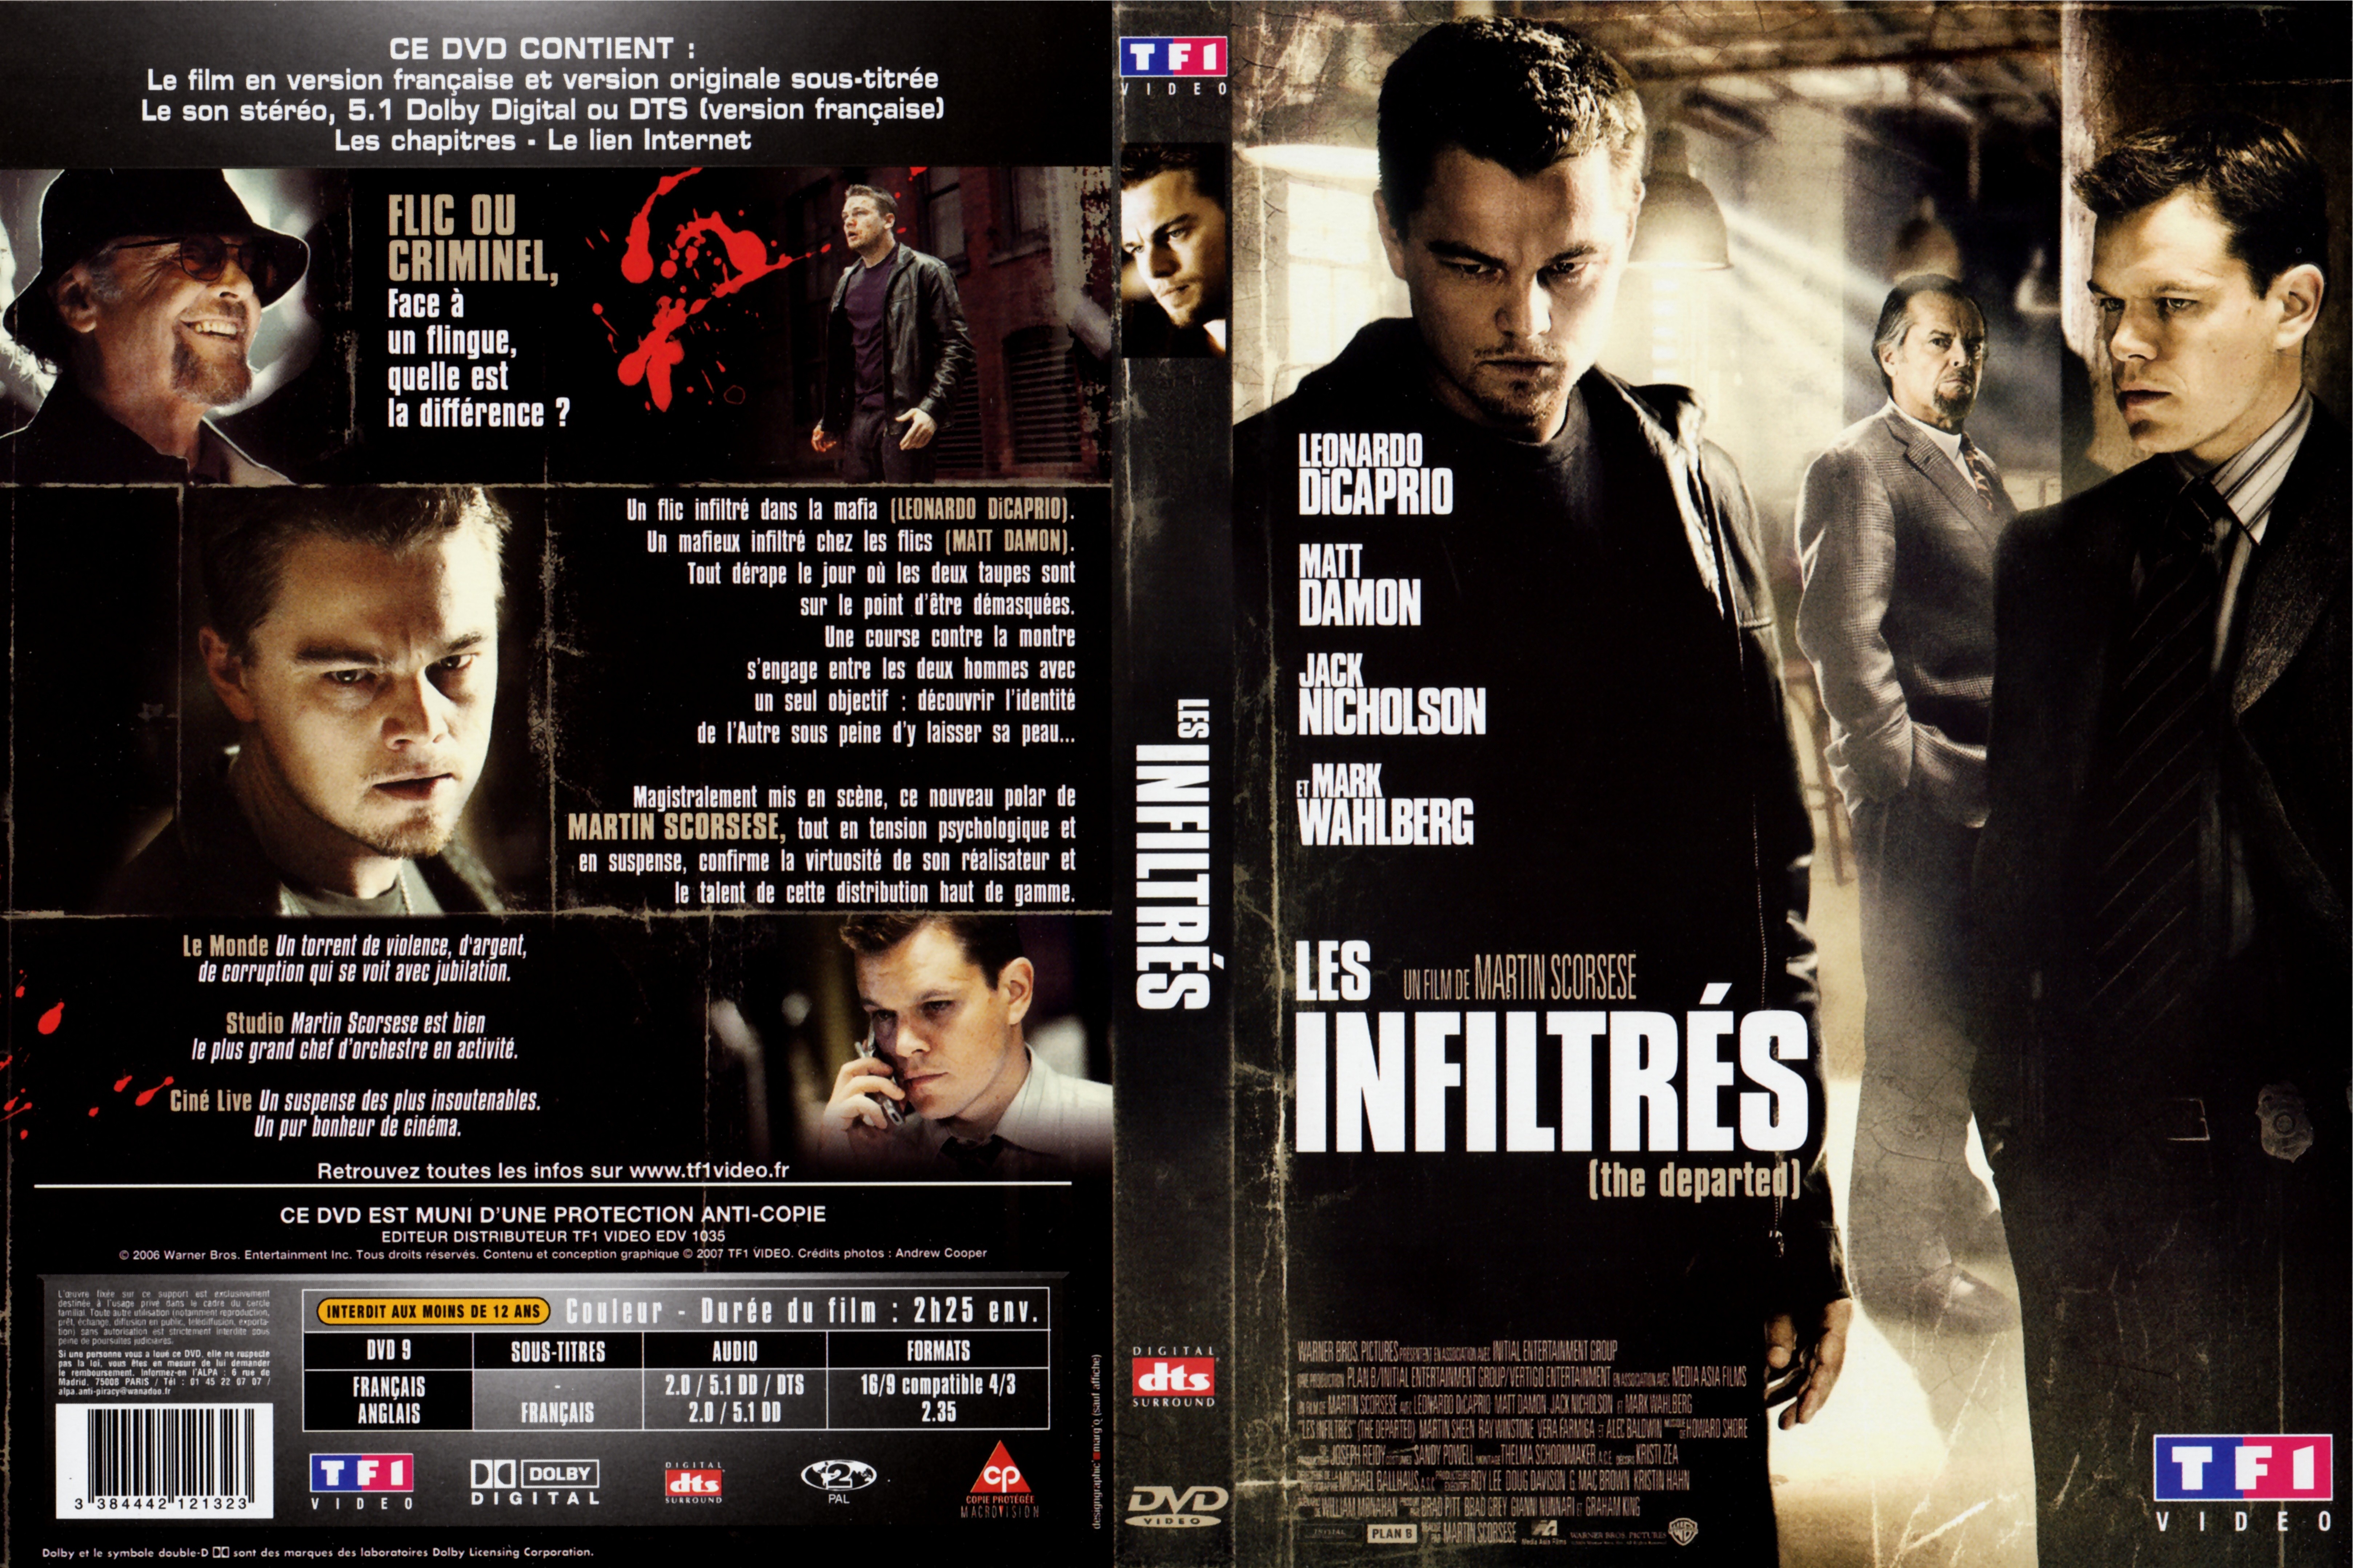 Jaquette DVD Les infiltres v2